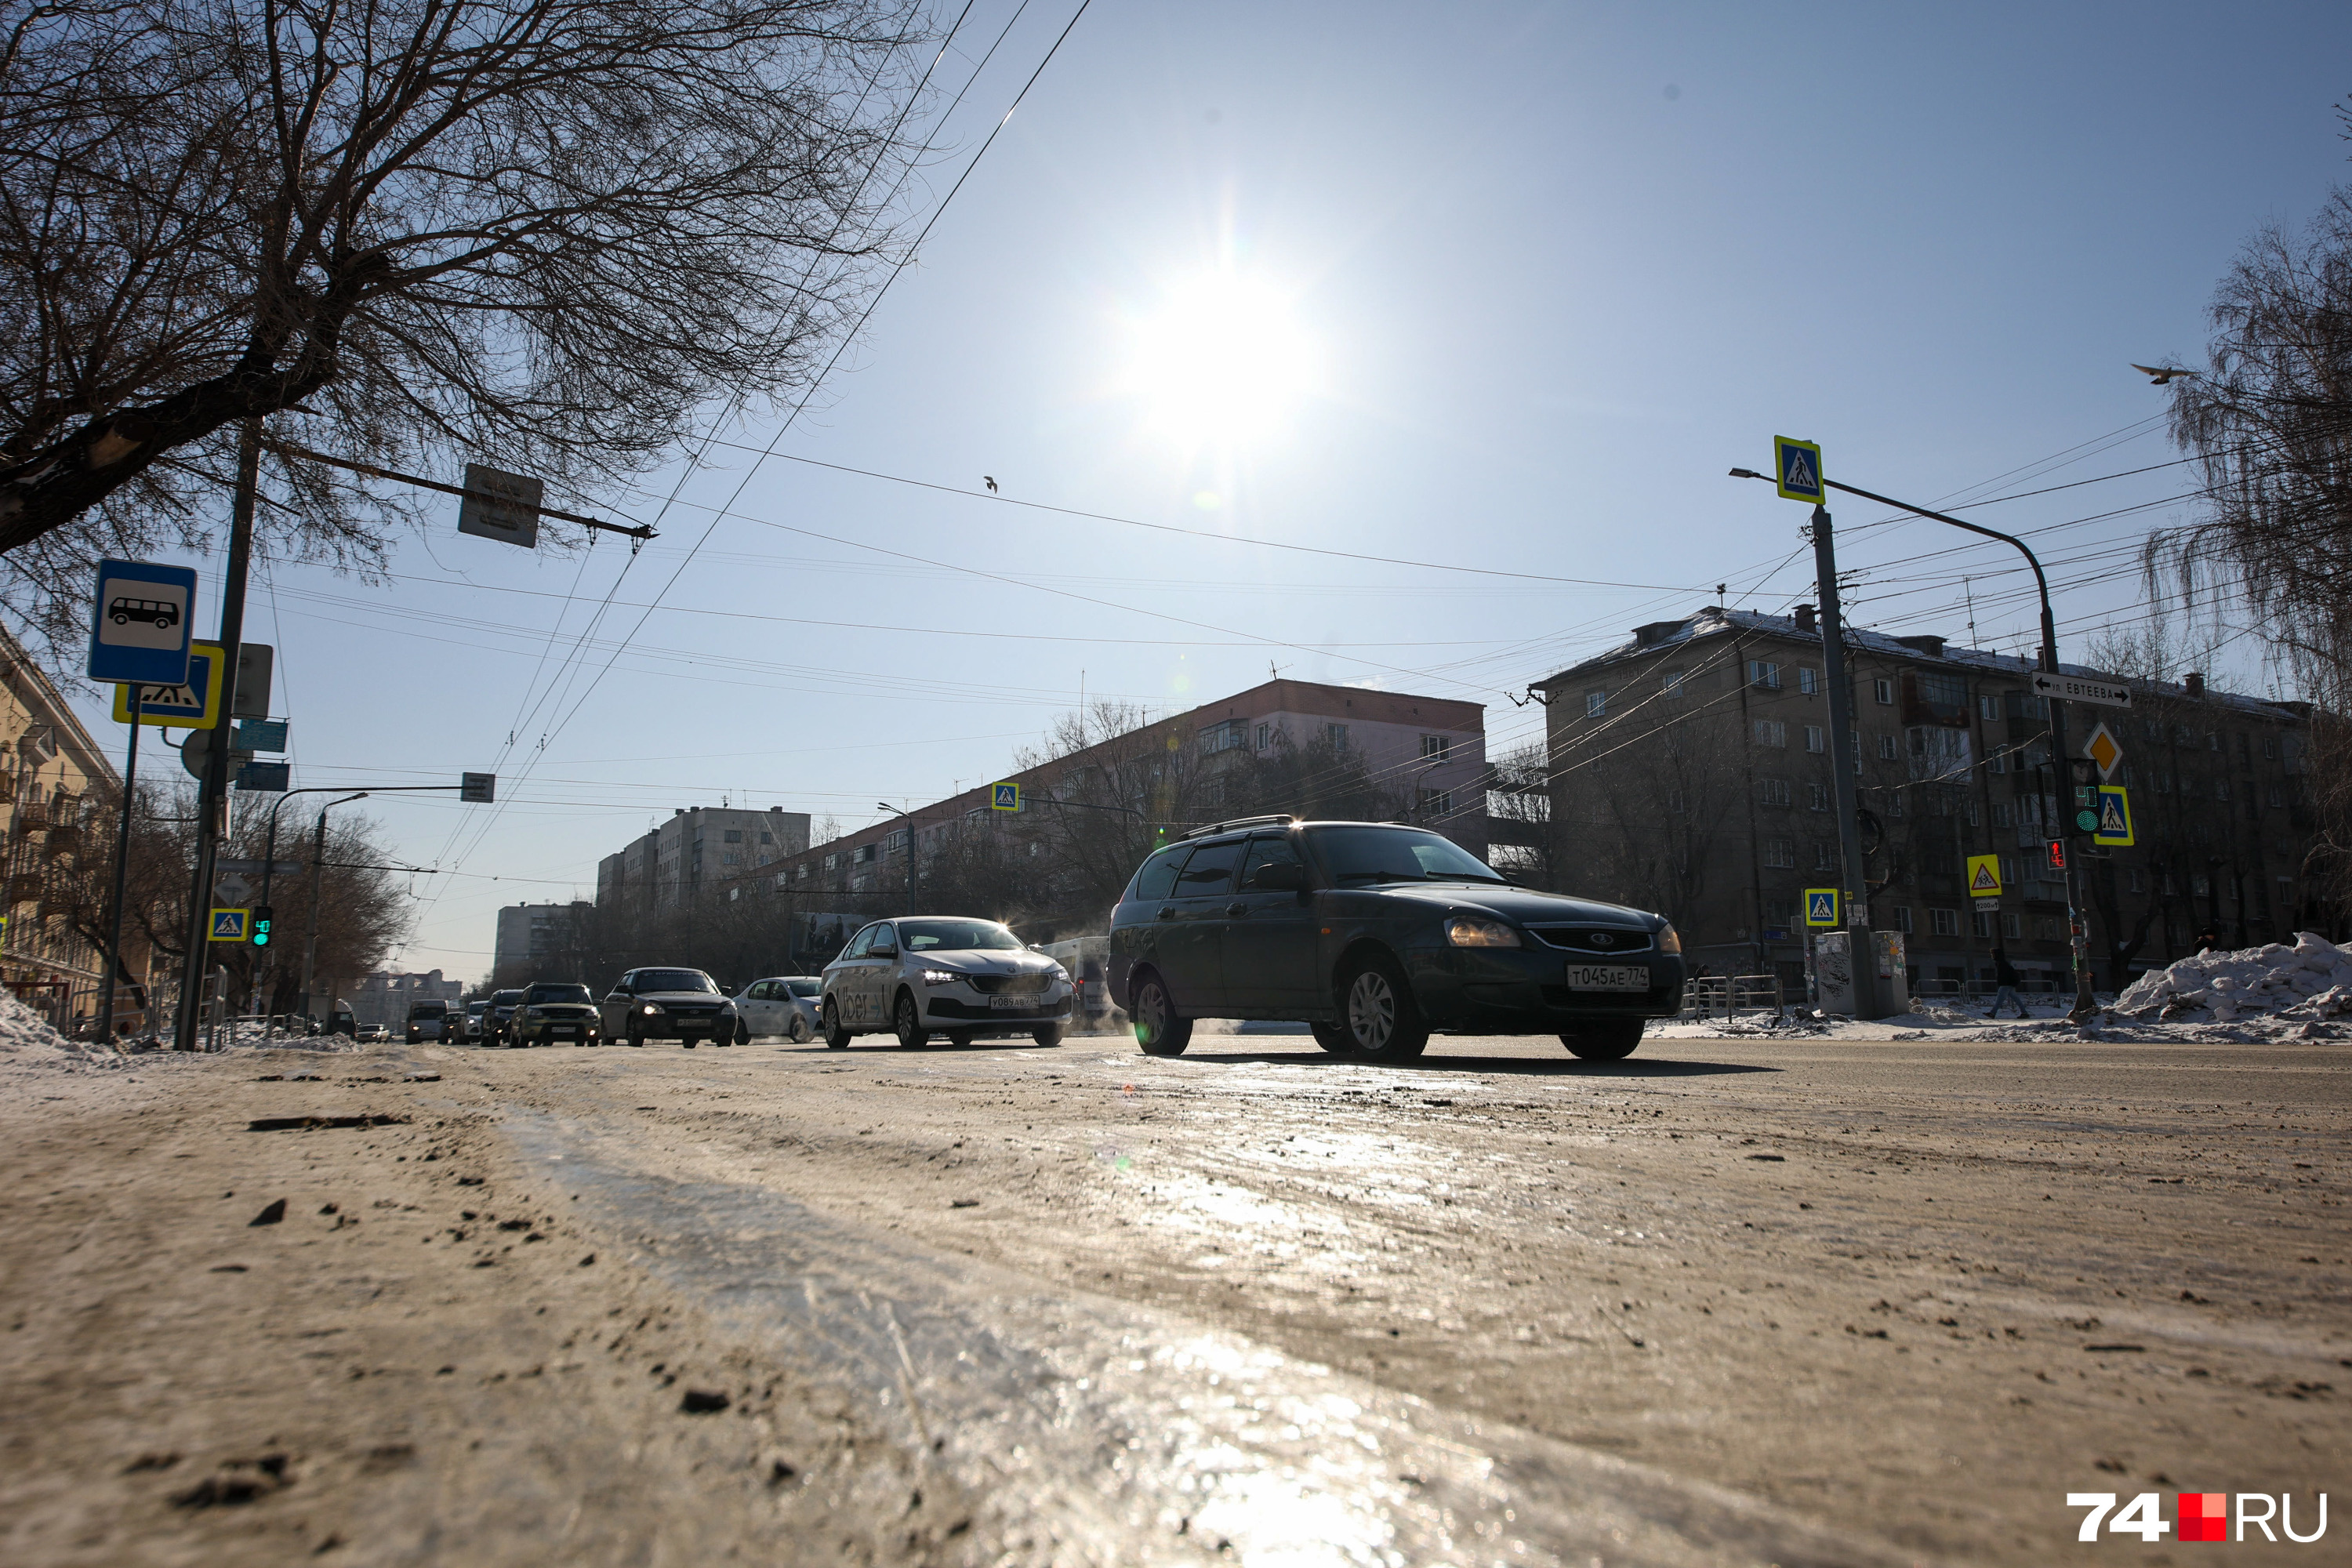 Синоптики обещают, что сегодня мороз отпустит. Может быть, это поможет дорожникам привести дороги в порядок?